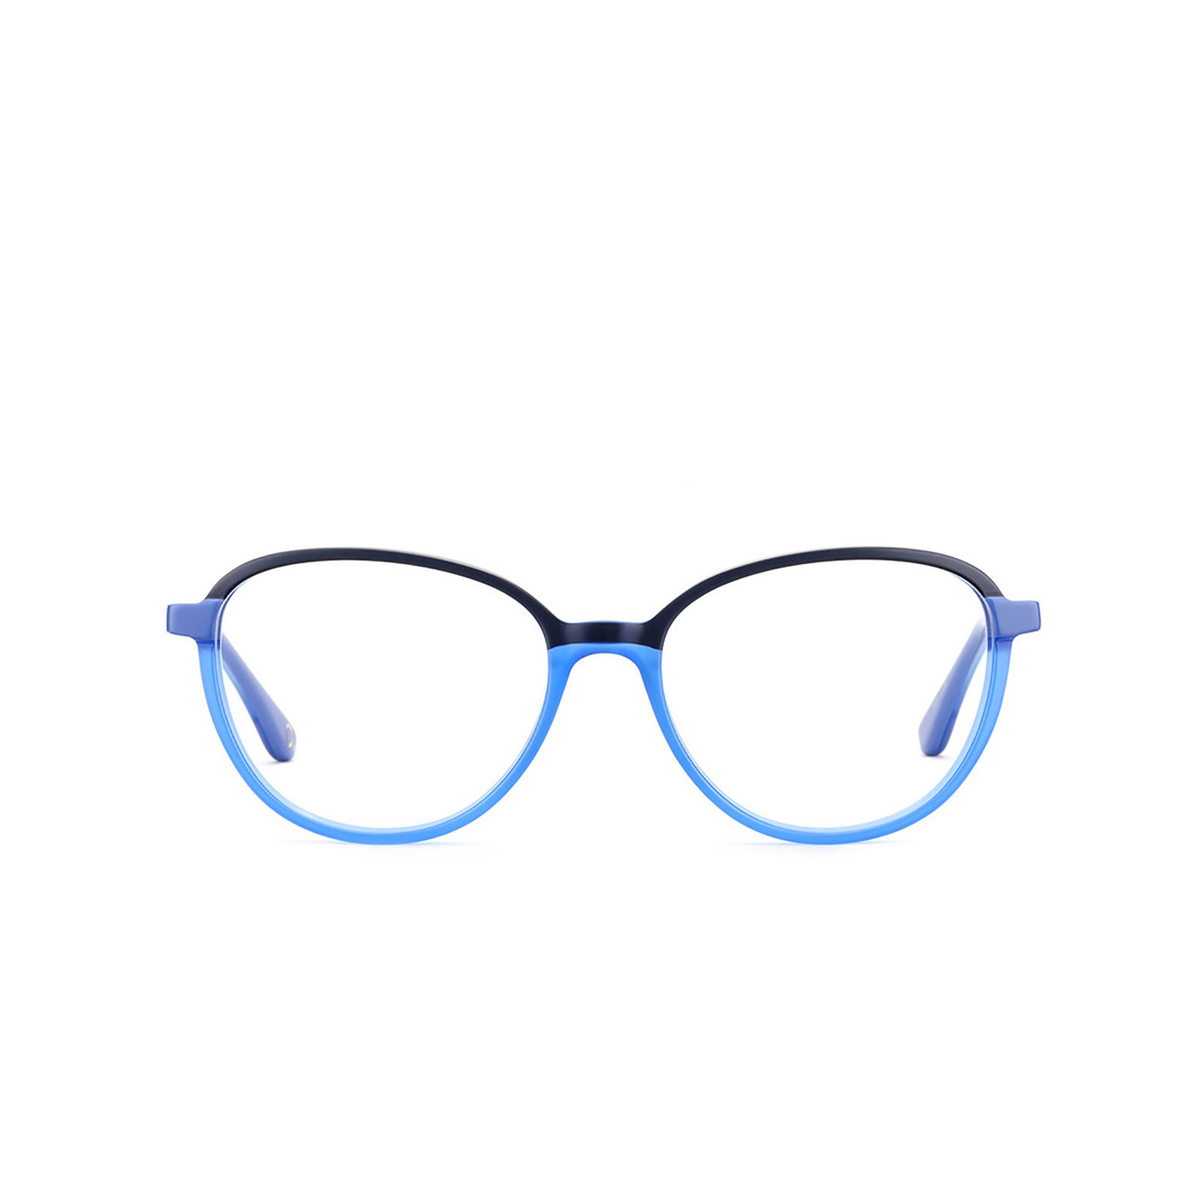 Etnia Barcelona® Oval Eyeglasses: Trevi color Blbl - front view.